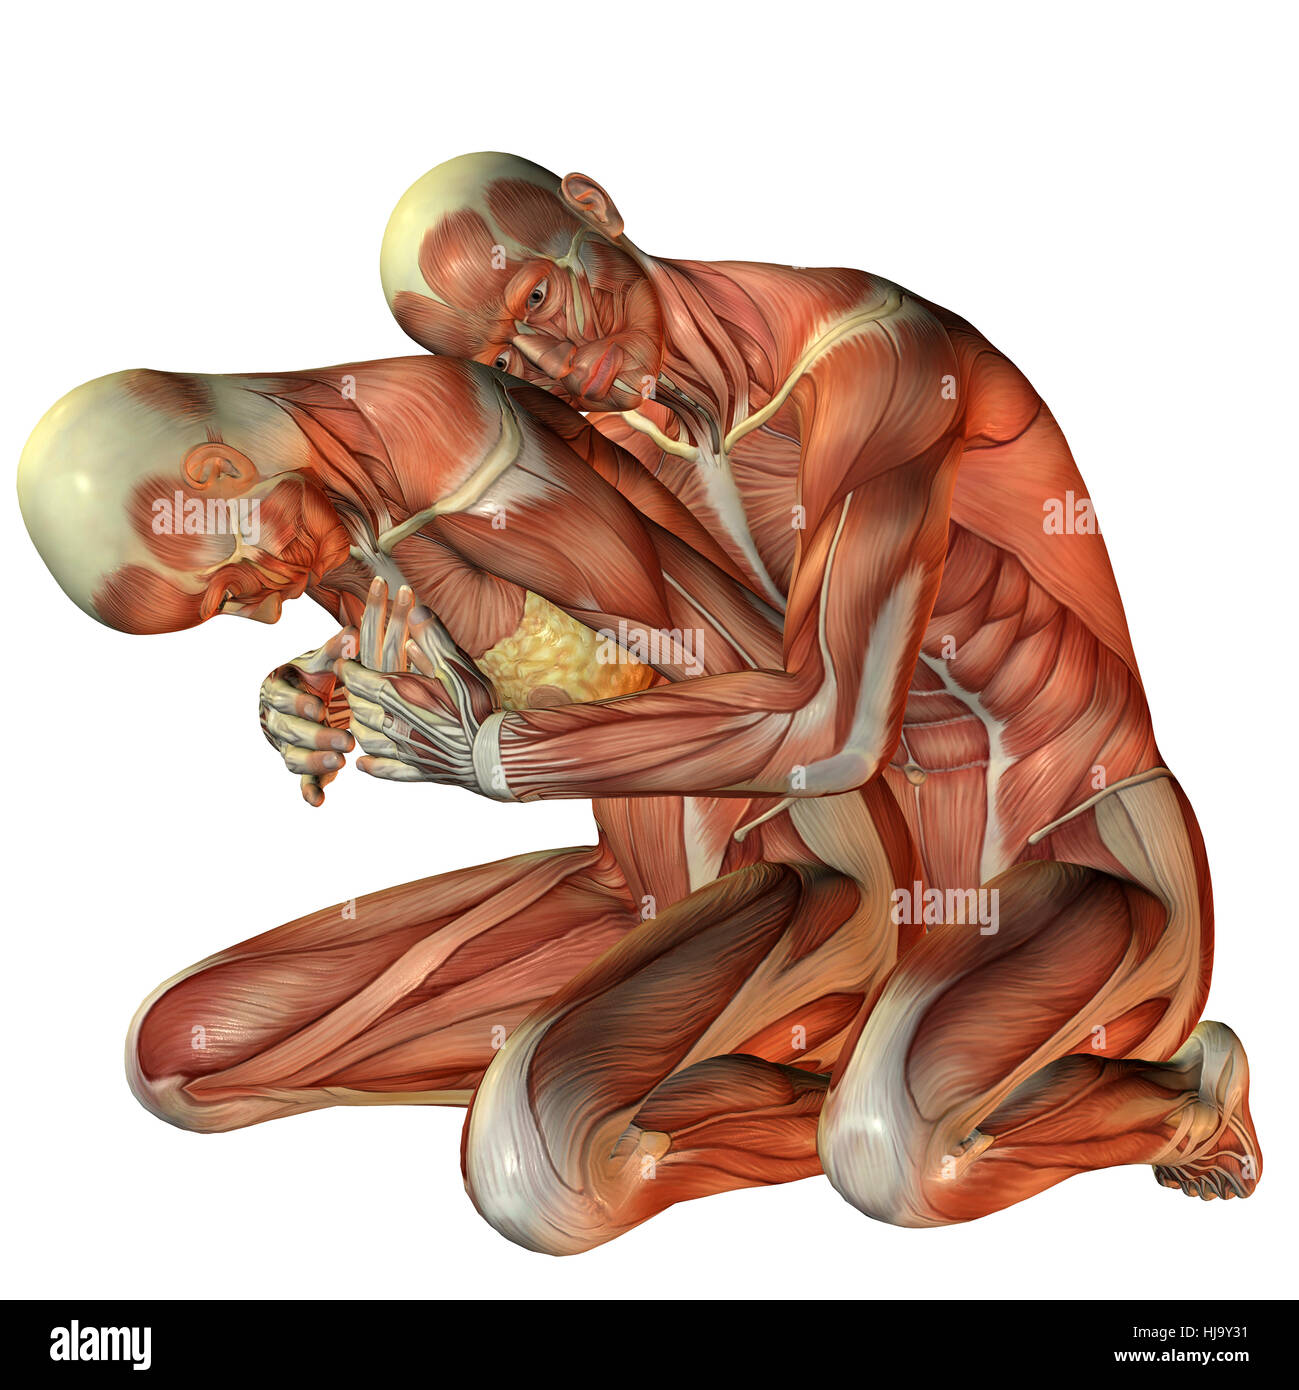 Anatomie mann frau